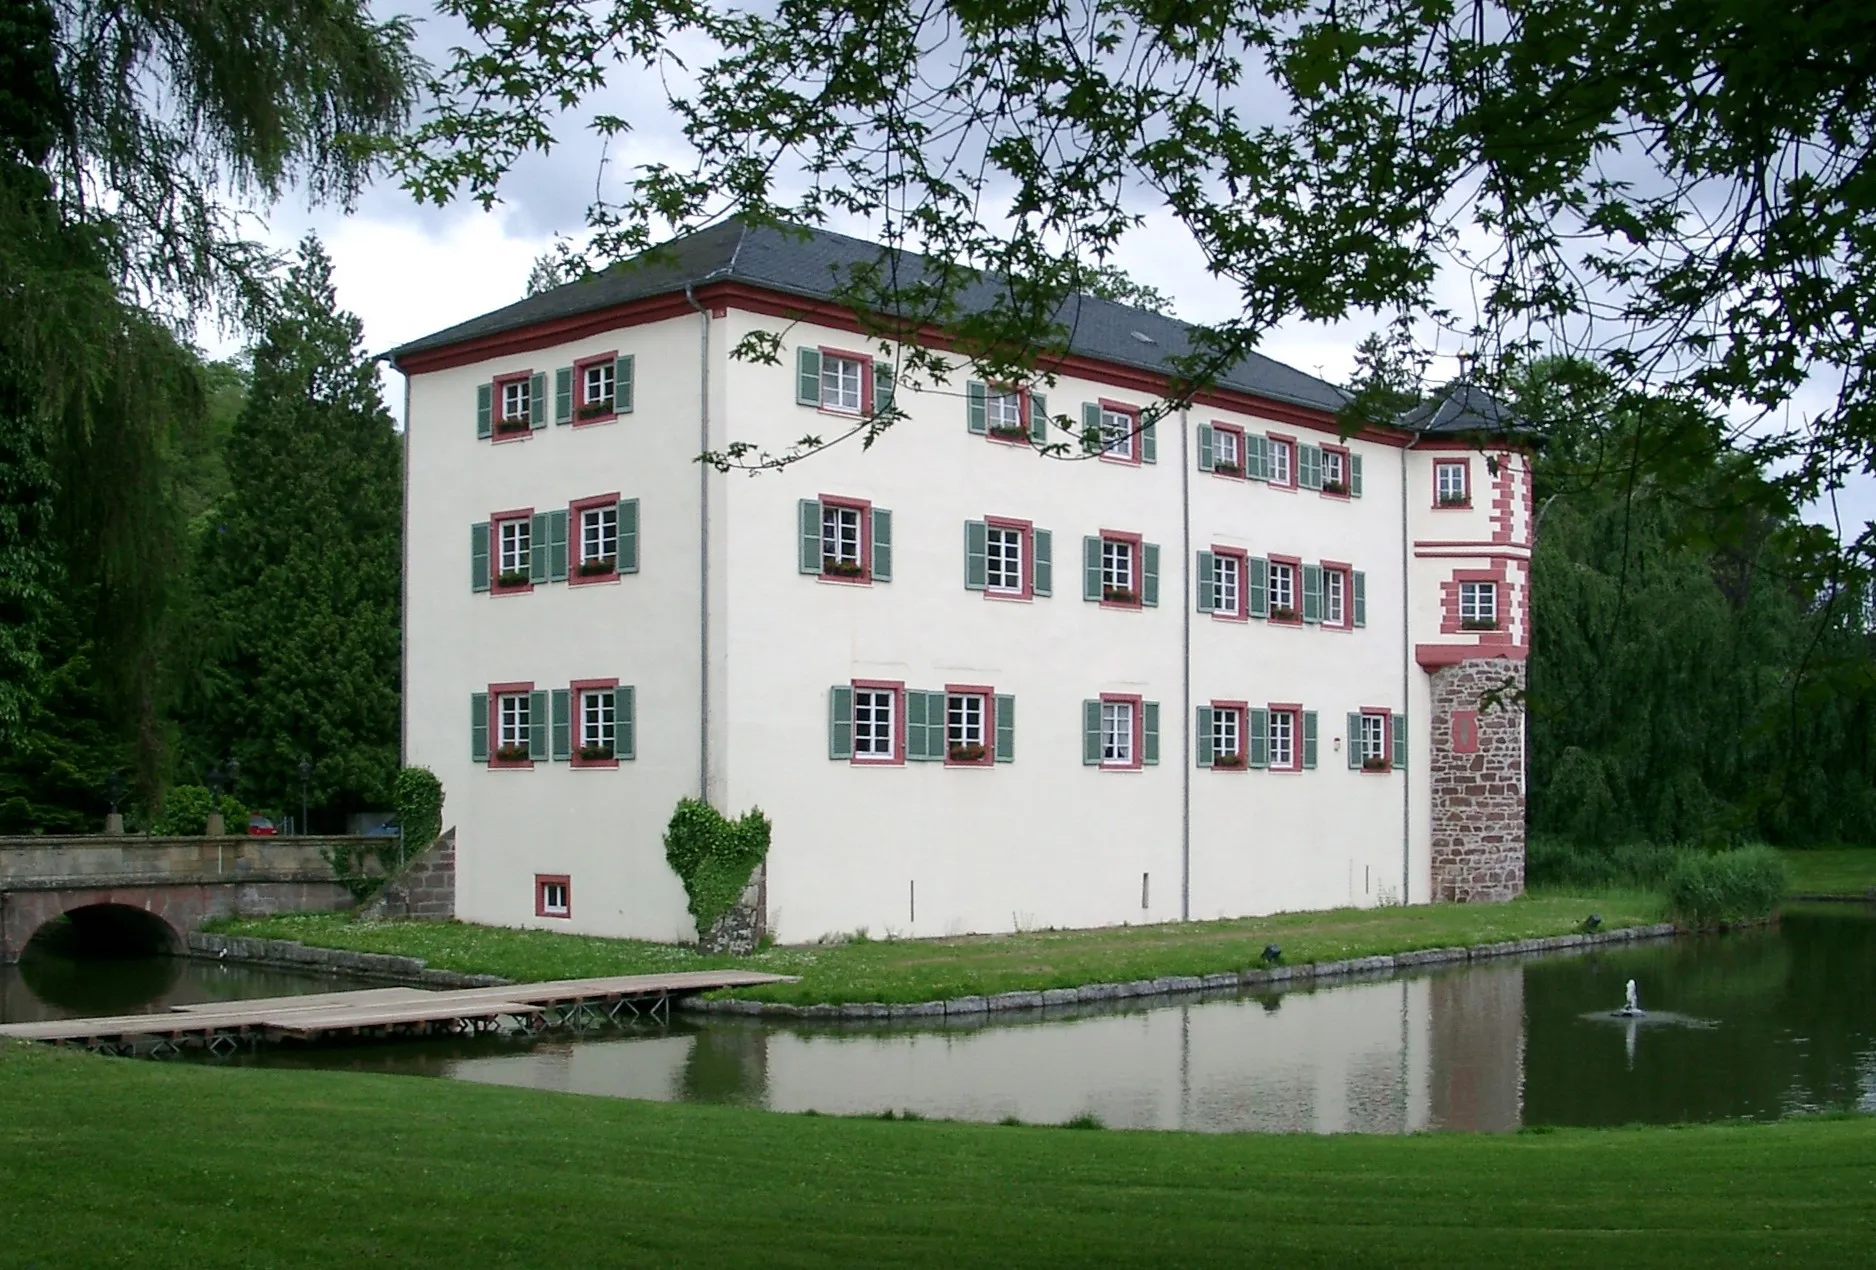 Photo showing: Angelbachtal, Ortsteil Eichtersheim, Schloß, u.a. genutzt als Rathaus. Das Angelbachtal ist eine Gemeinde mit etwa 5000 Einwohnern im Kraichgau, zwischen Sinsheim und Bruchsal